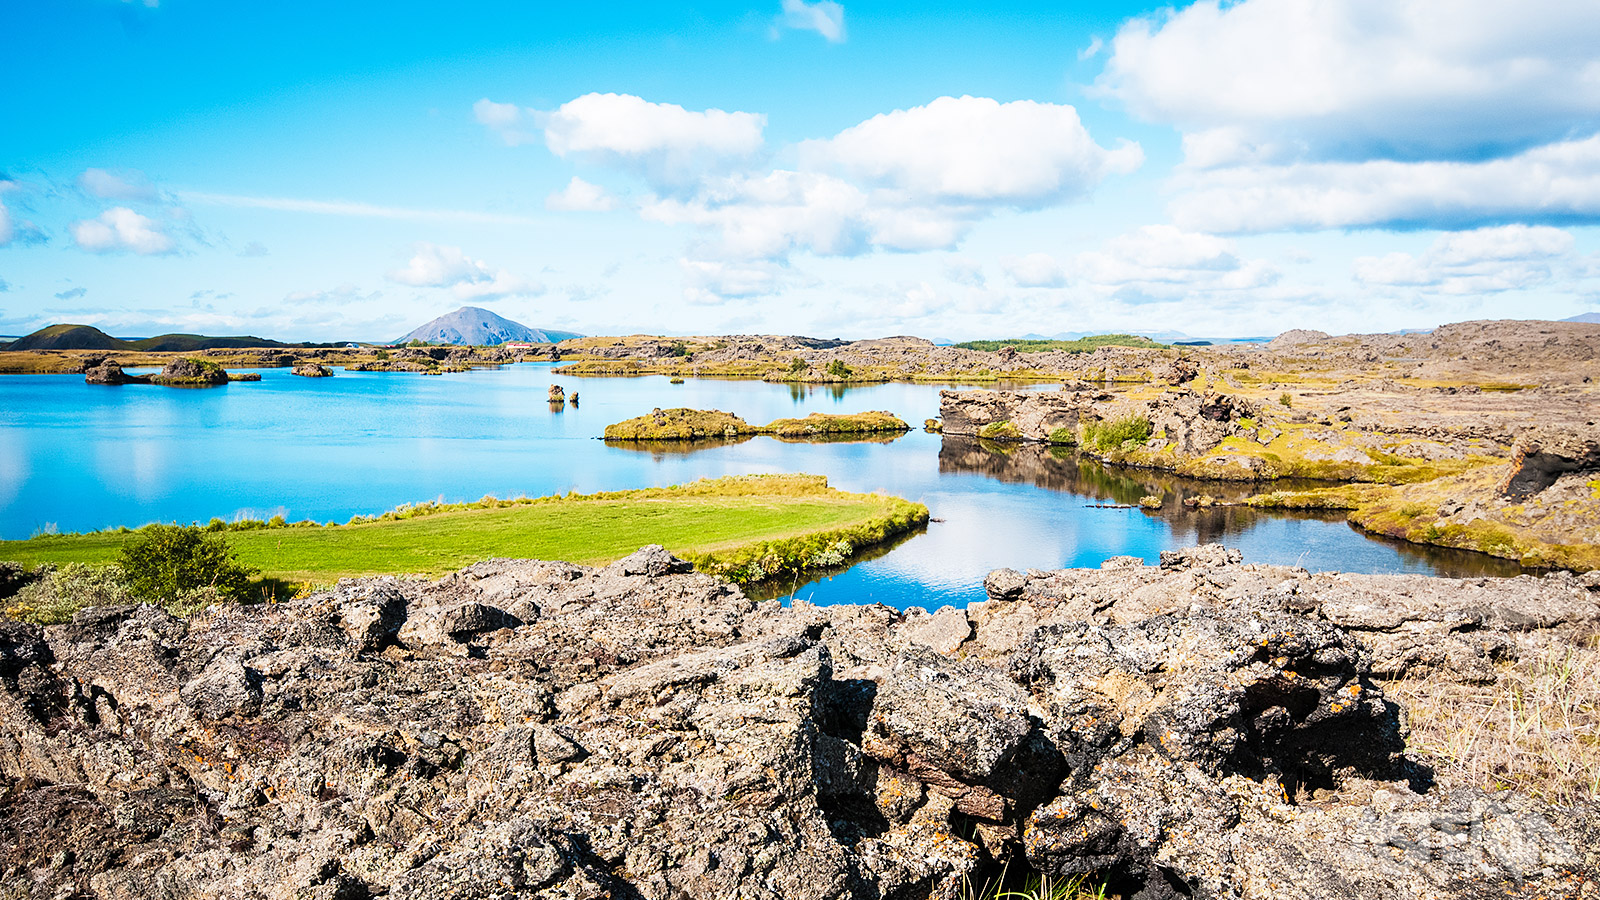 Myvatn is één van de meest verbazingwekkende gebieden van IJsland omwille van de vogels, het prachtige meer en de vulkanische omgeving